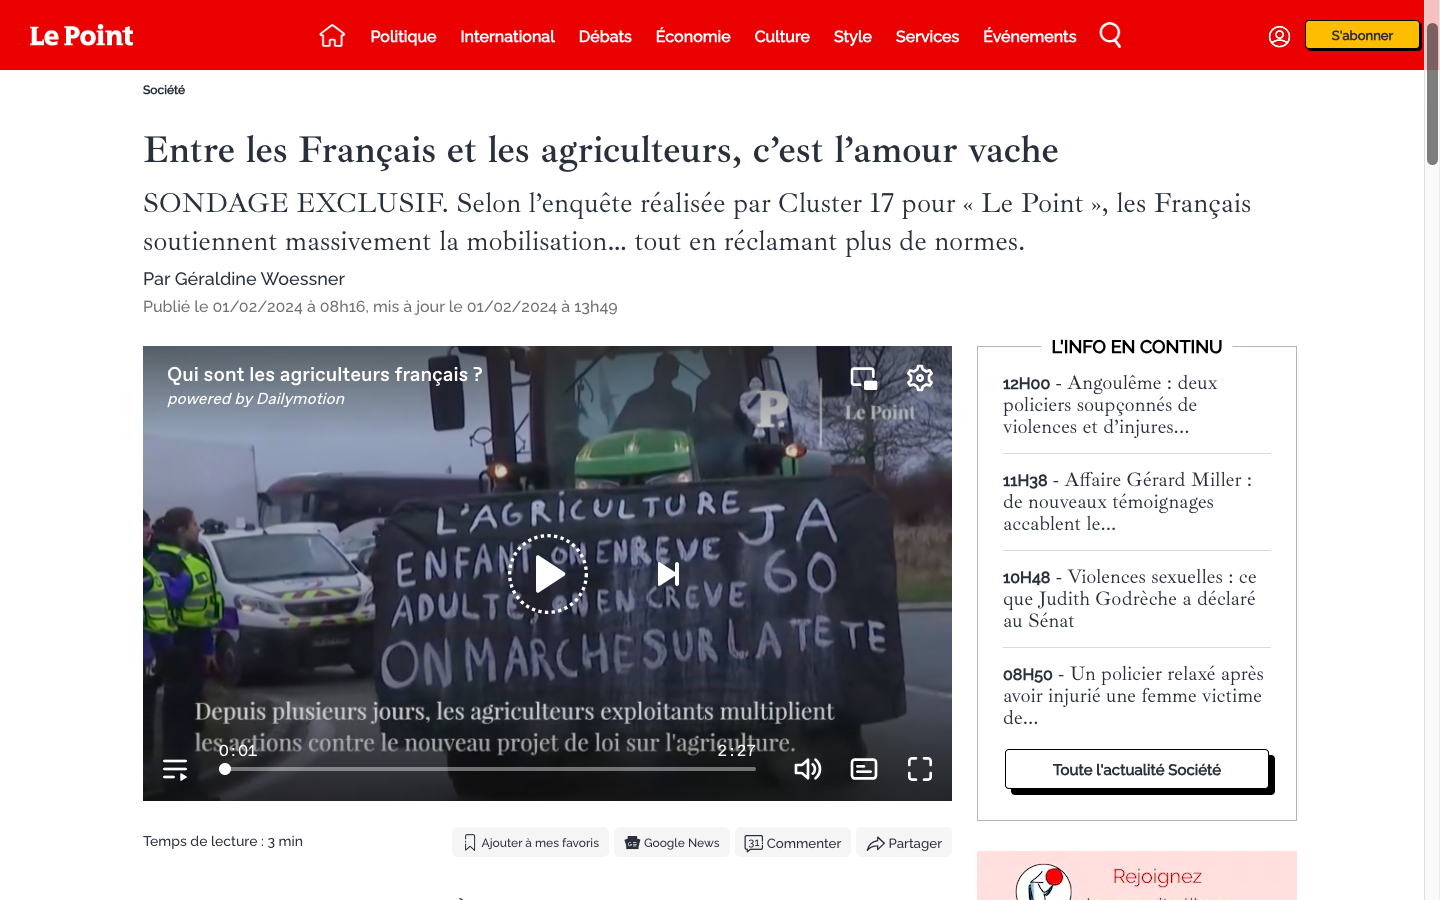 Le Point - Entre les Français et les agriculteurs, c’est l’amour vache